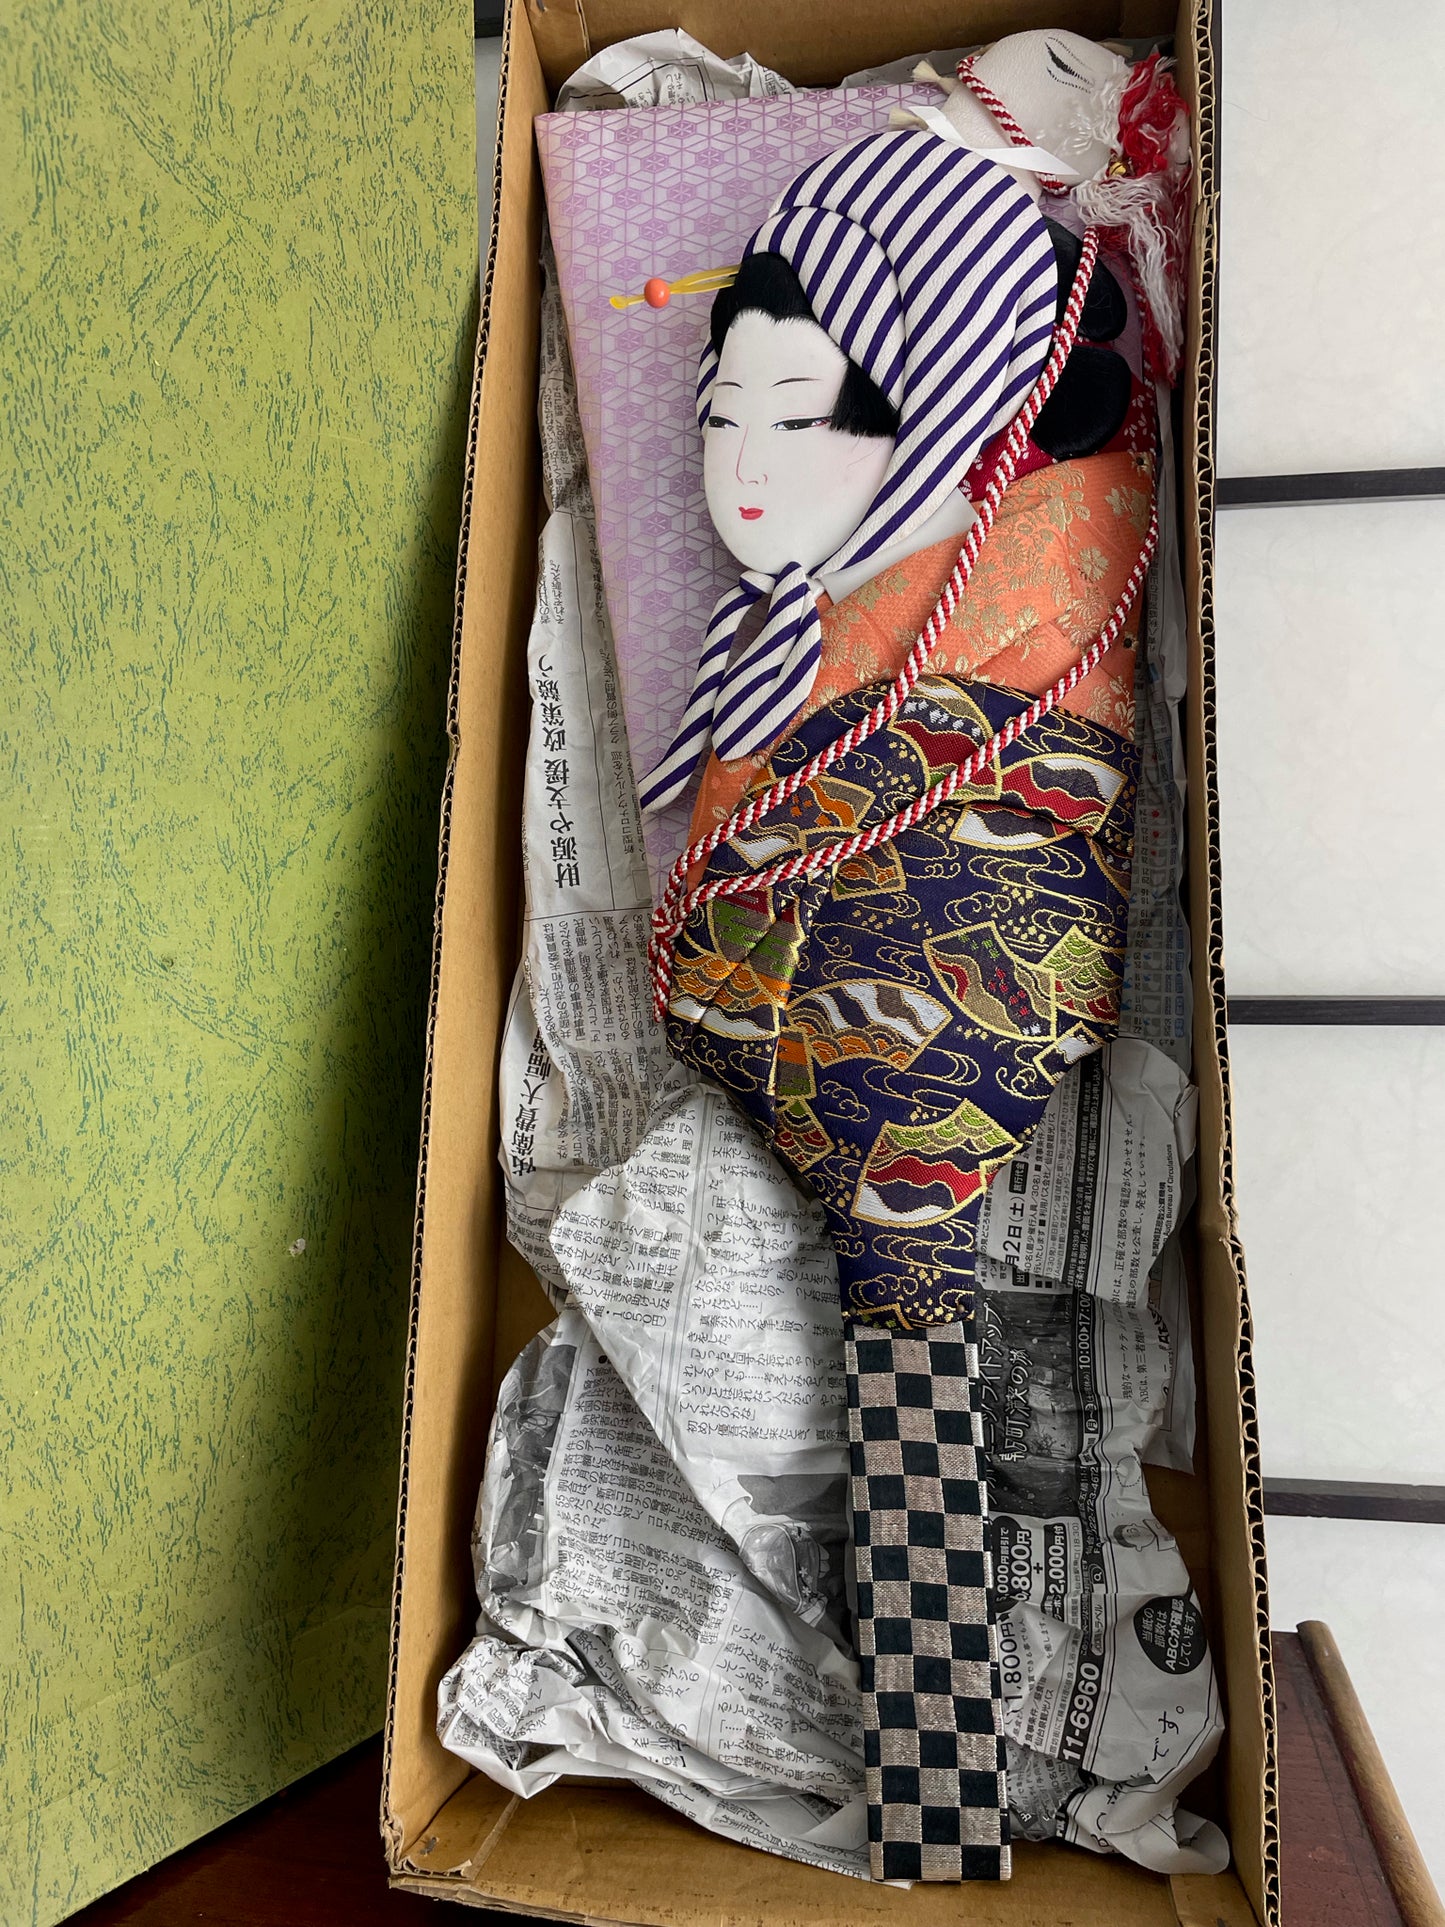 hagoita, raquette japonaise décorative visage femme tissu, avec sa boite d'origine